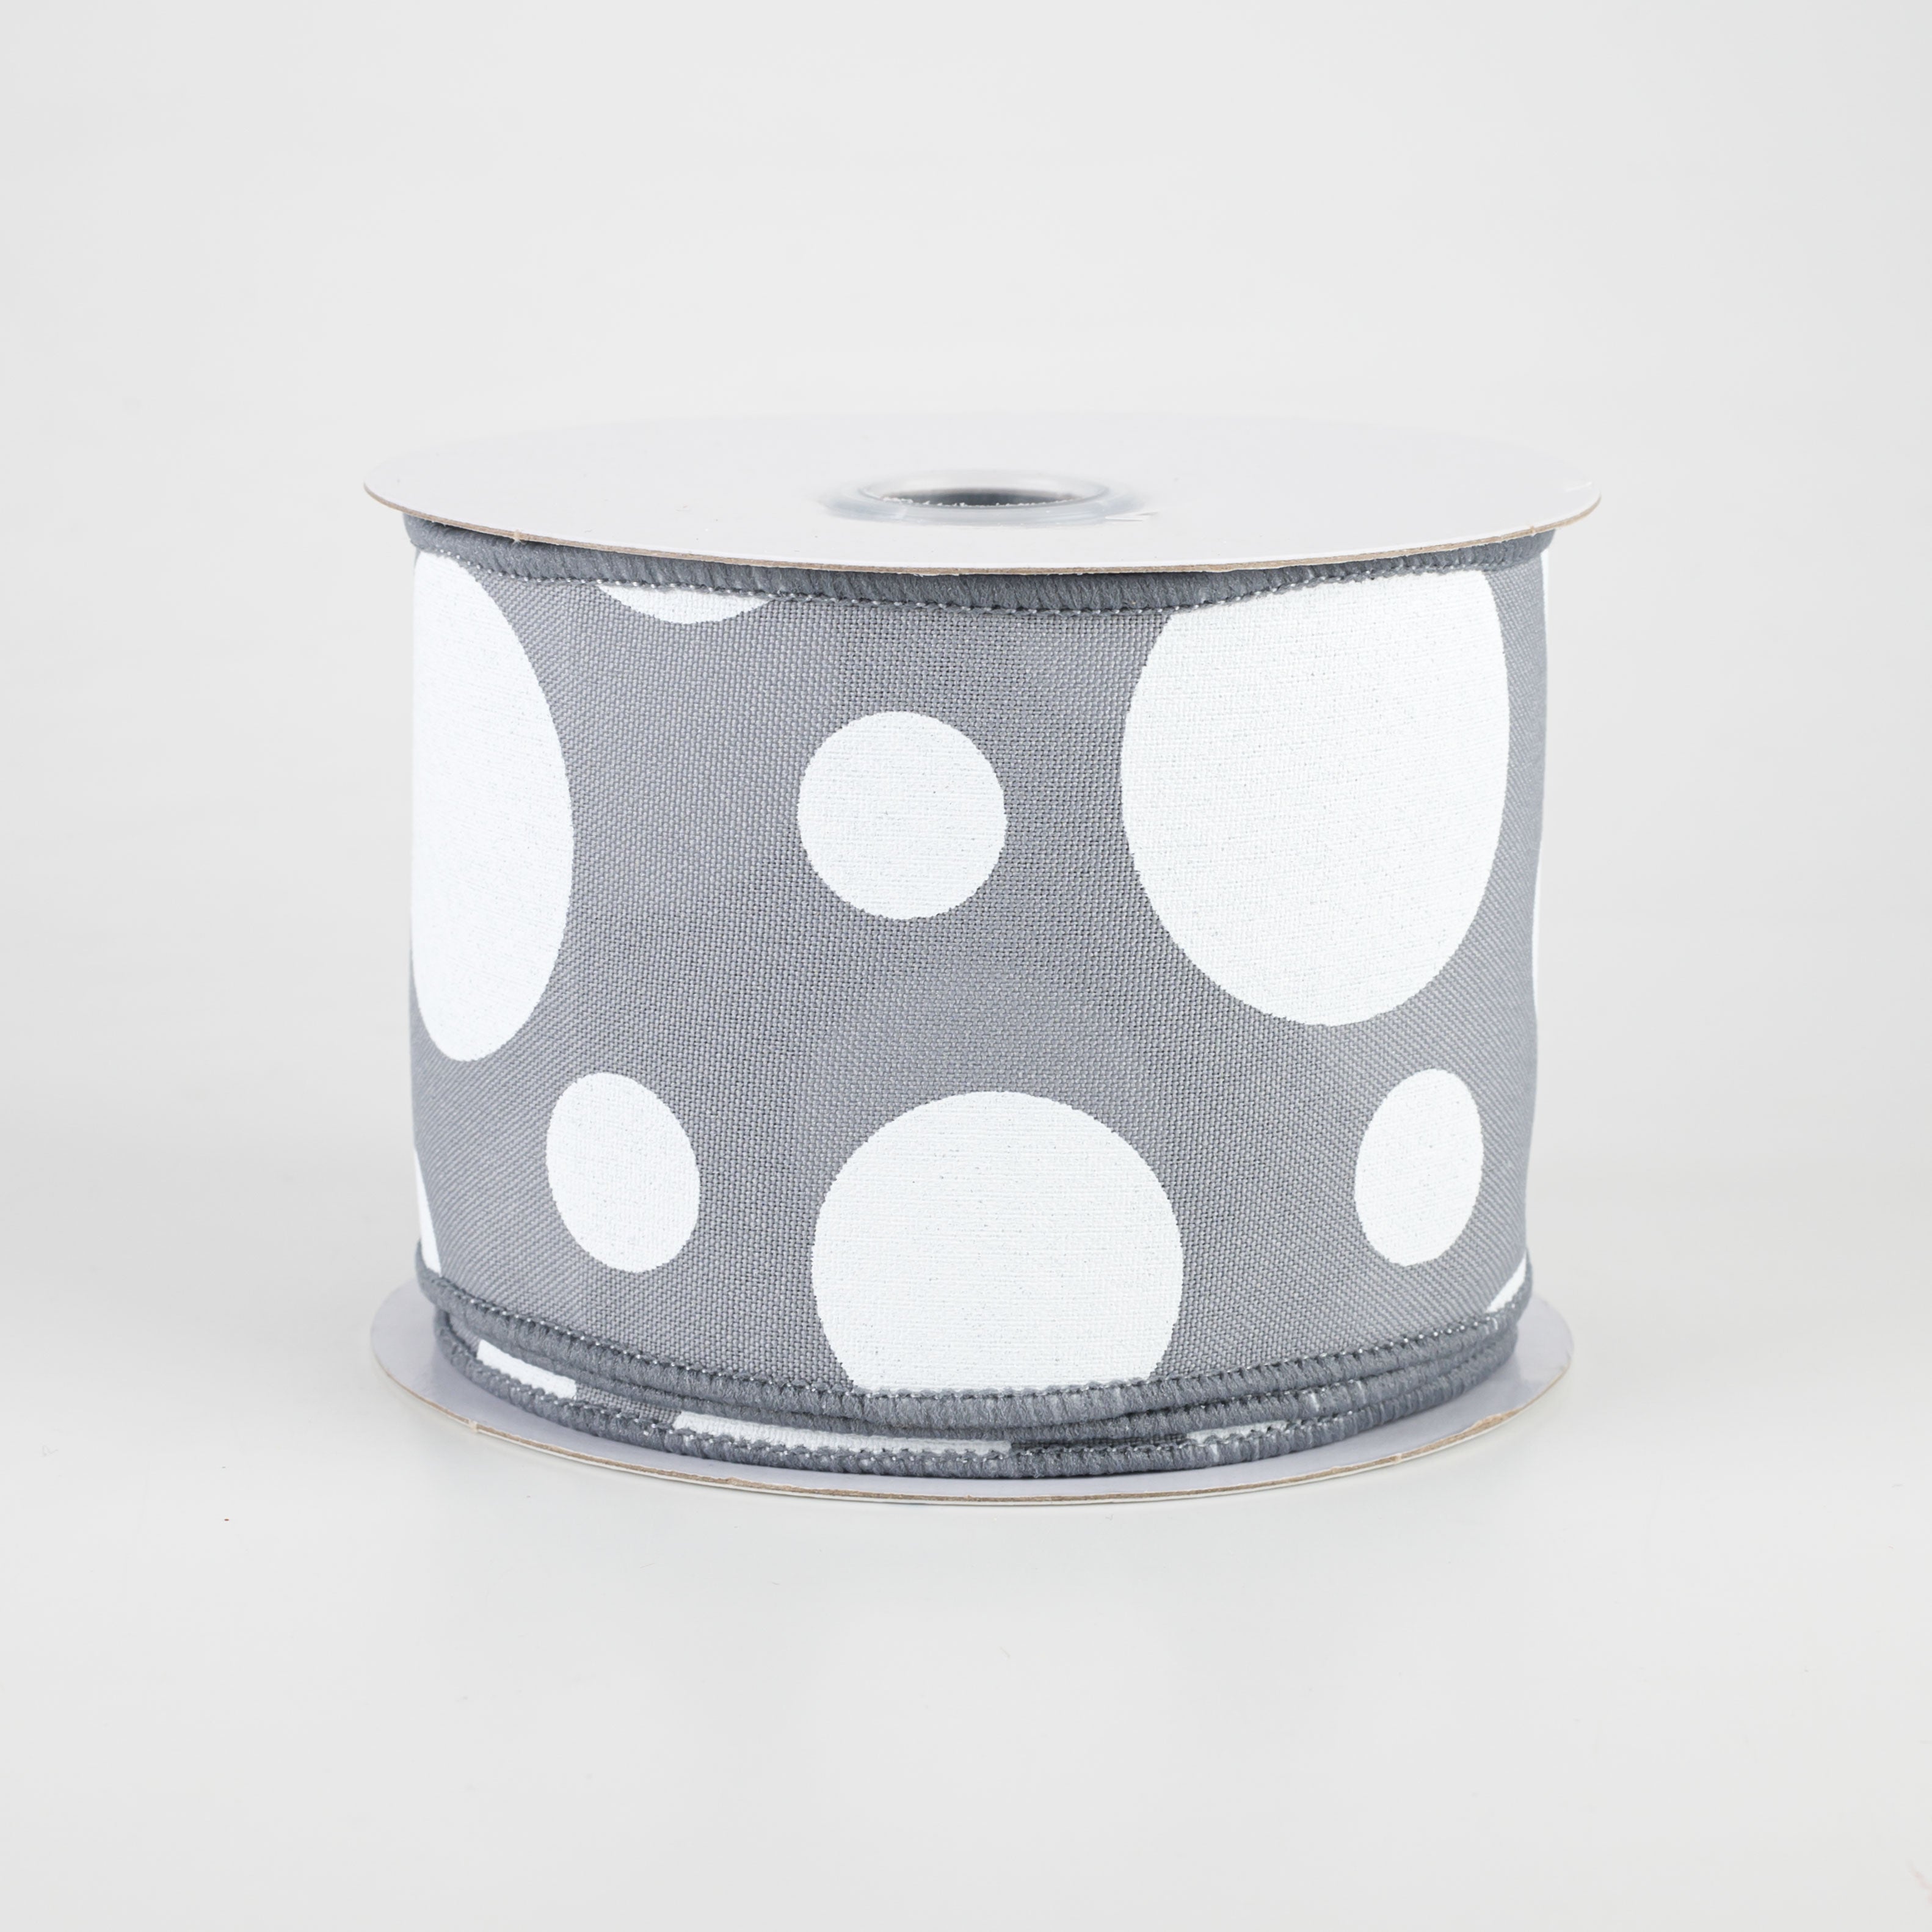 2.5" Giant Three Size Polka Dot Ribbon: Dark Grey & White (10 Yards)